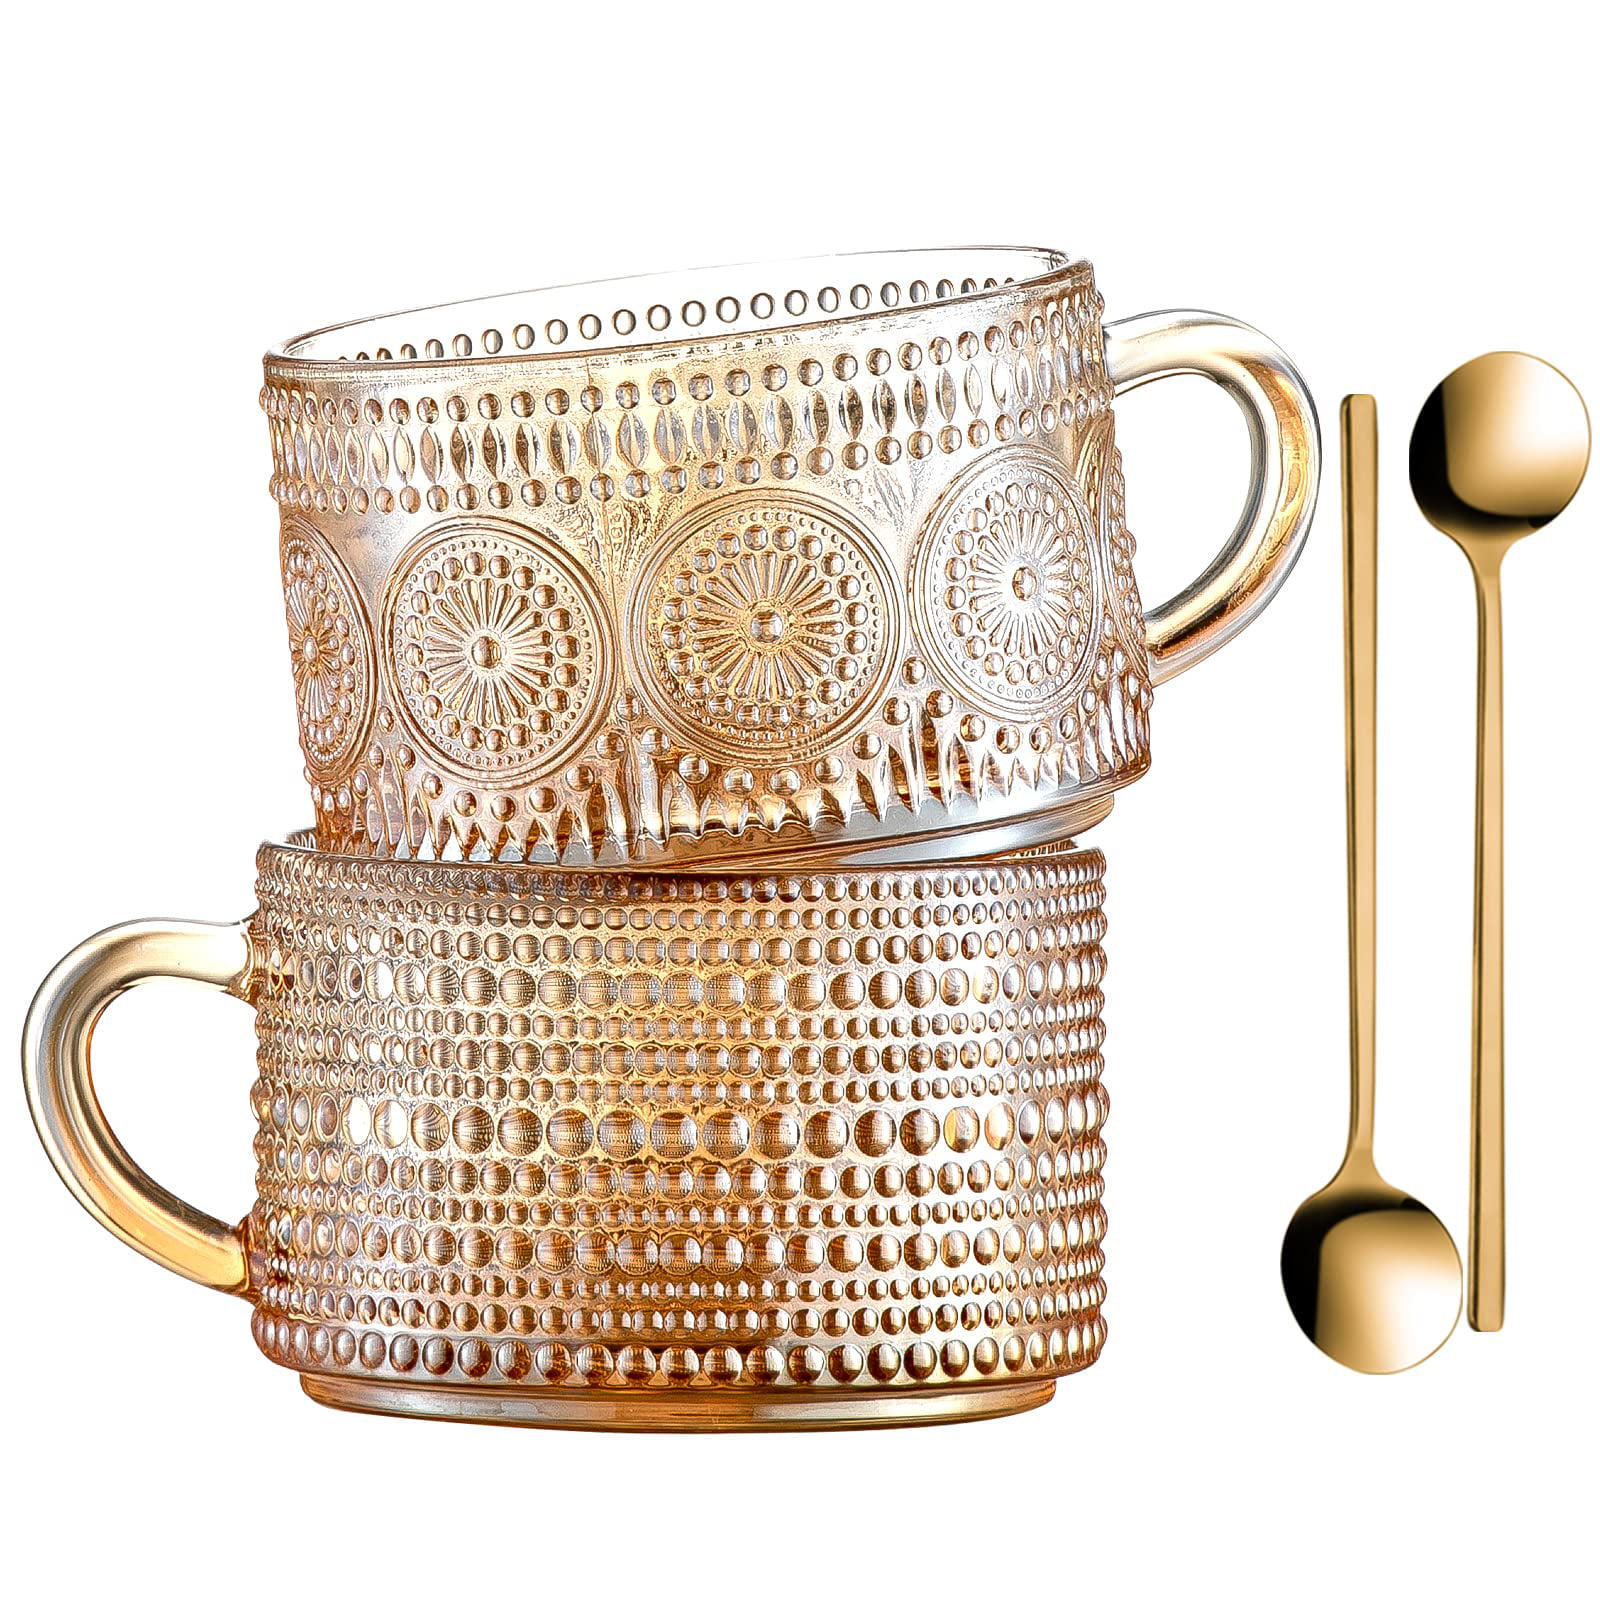 Glass Coffee Mugs Tea Cups - 14 Oz Amber Glass Mug with Lid Set of 4 Ribbed  Vintage Mugs with Straw …See more Glass Coffee Mugs Tea Cups - 14 Oz Amber